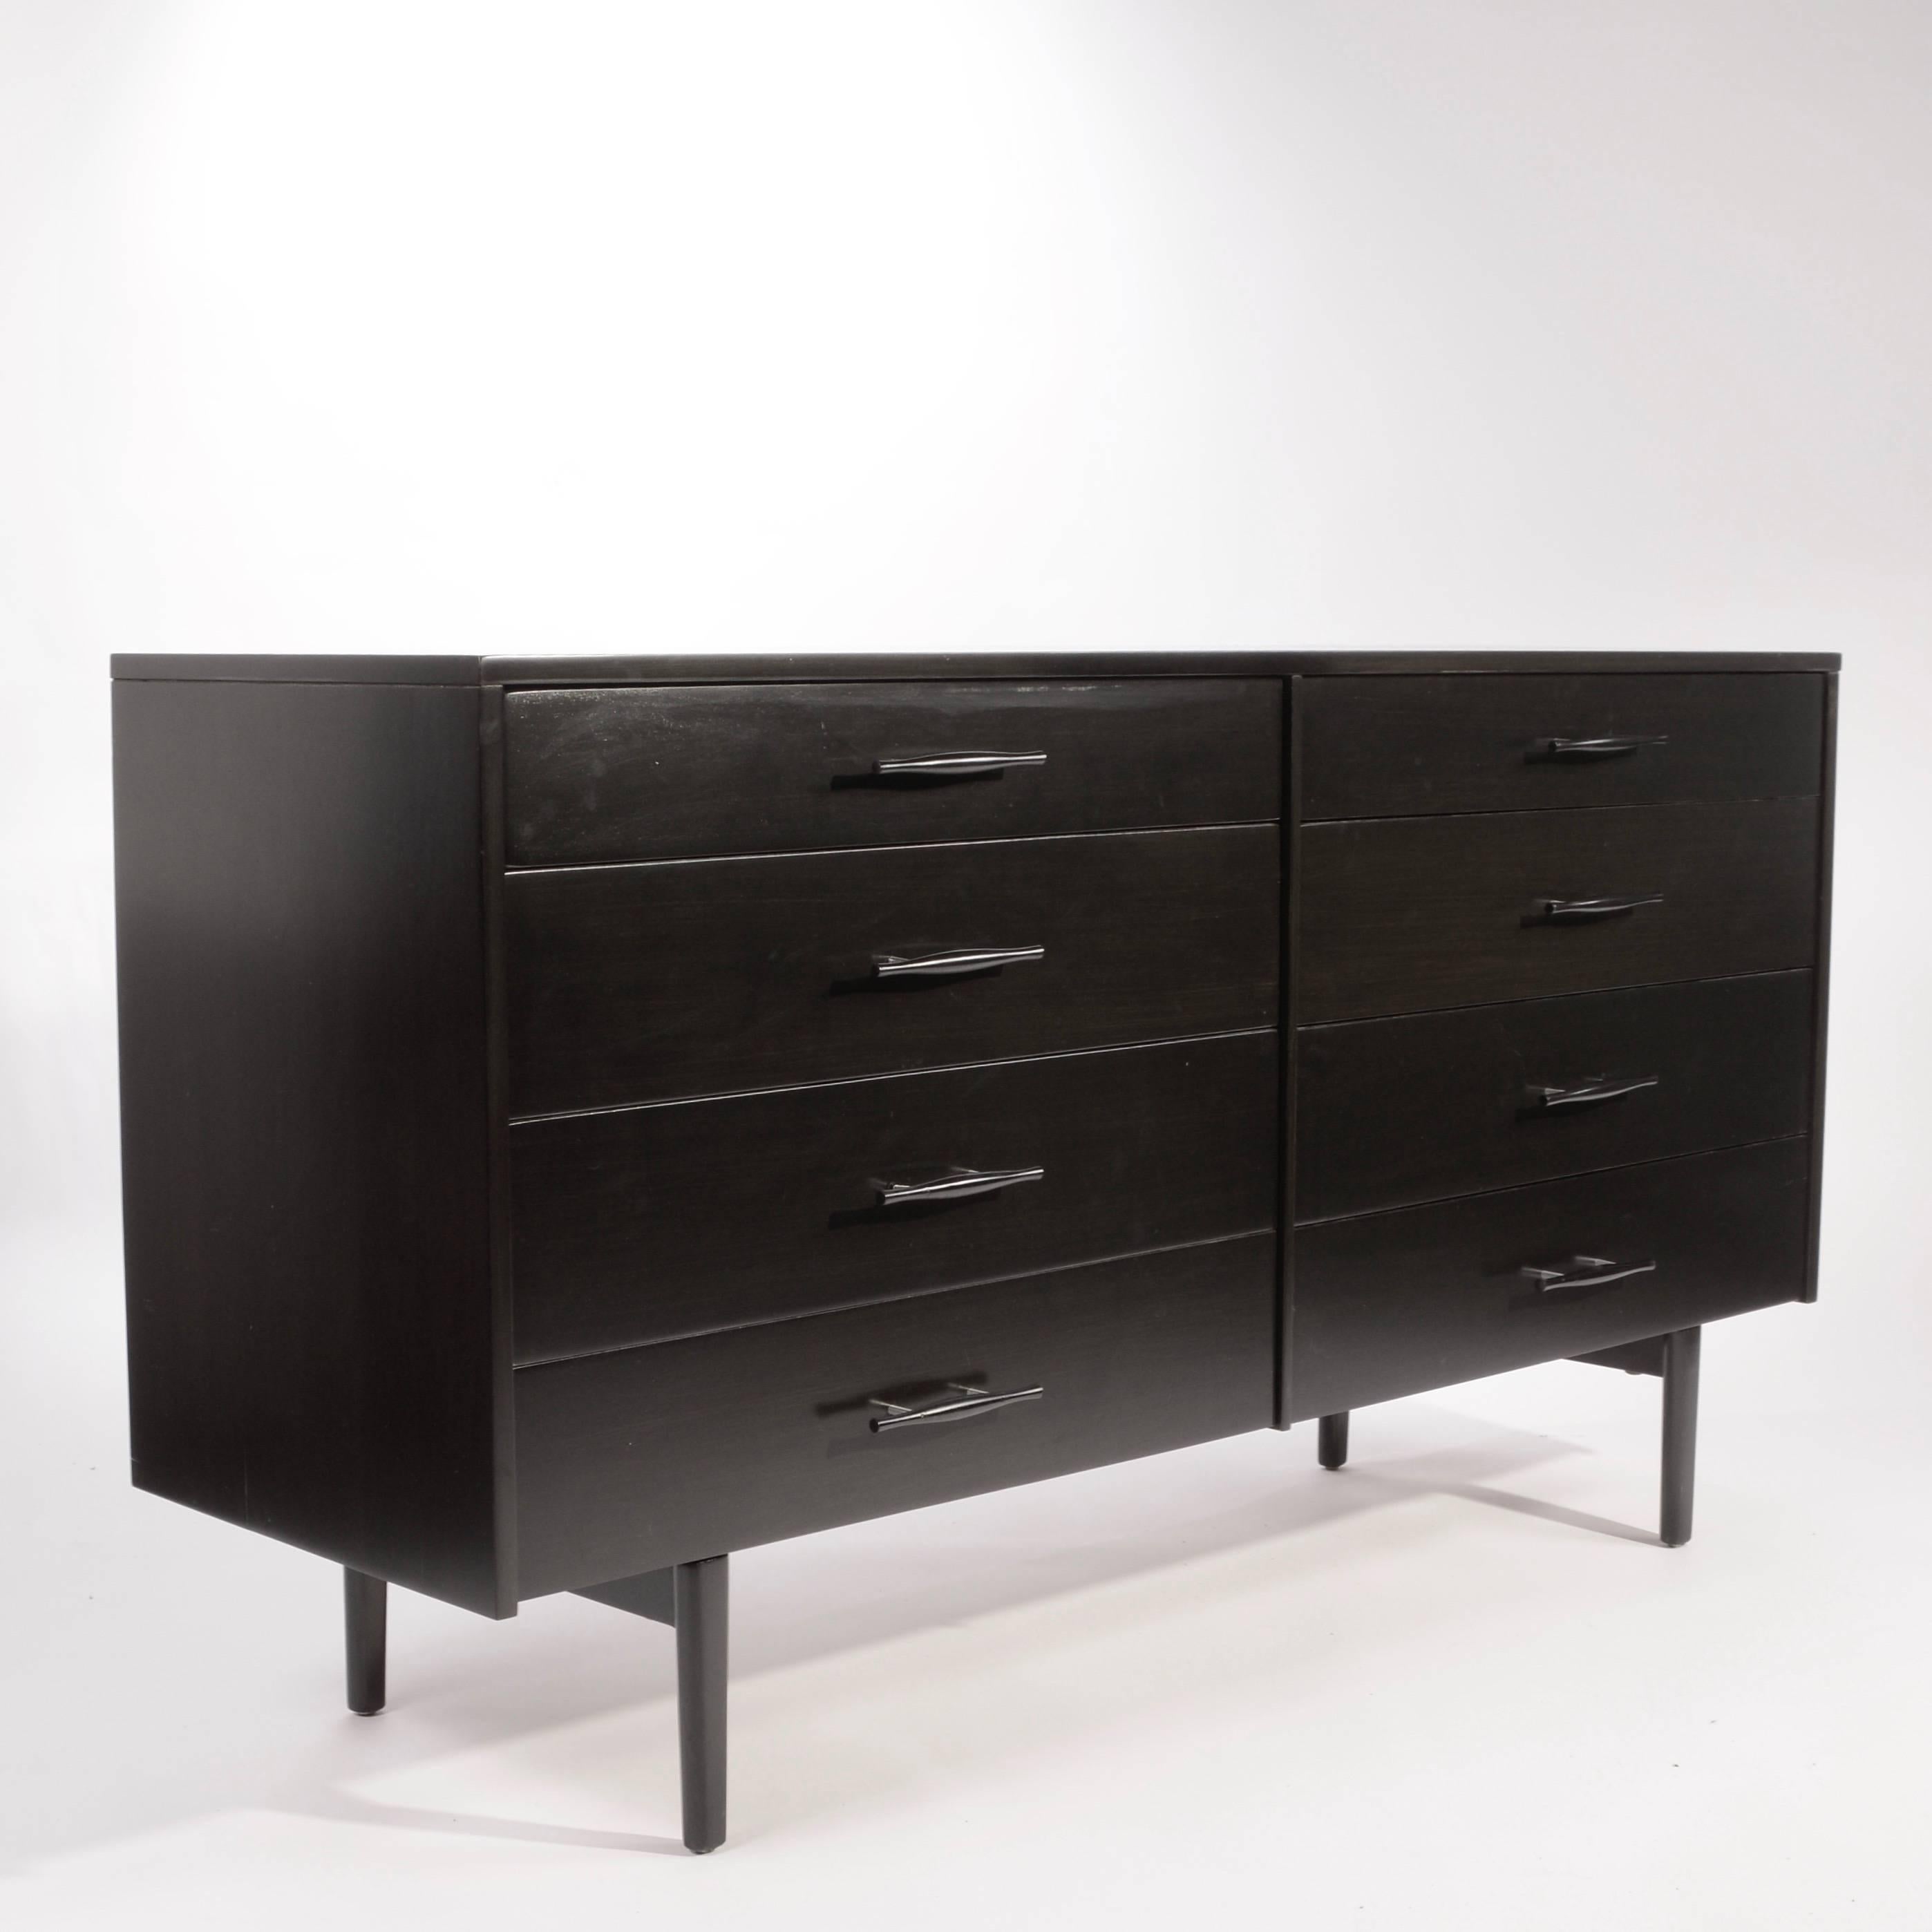 American Paul Mccobb for Planner Group Eight-Drawer Dresser in Ebonized Maple